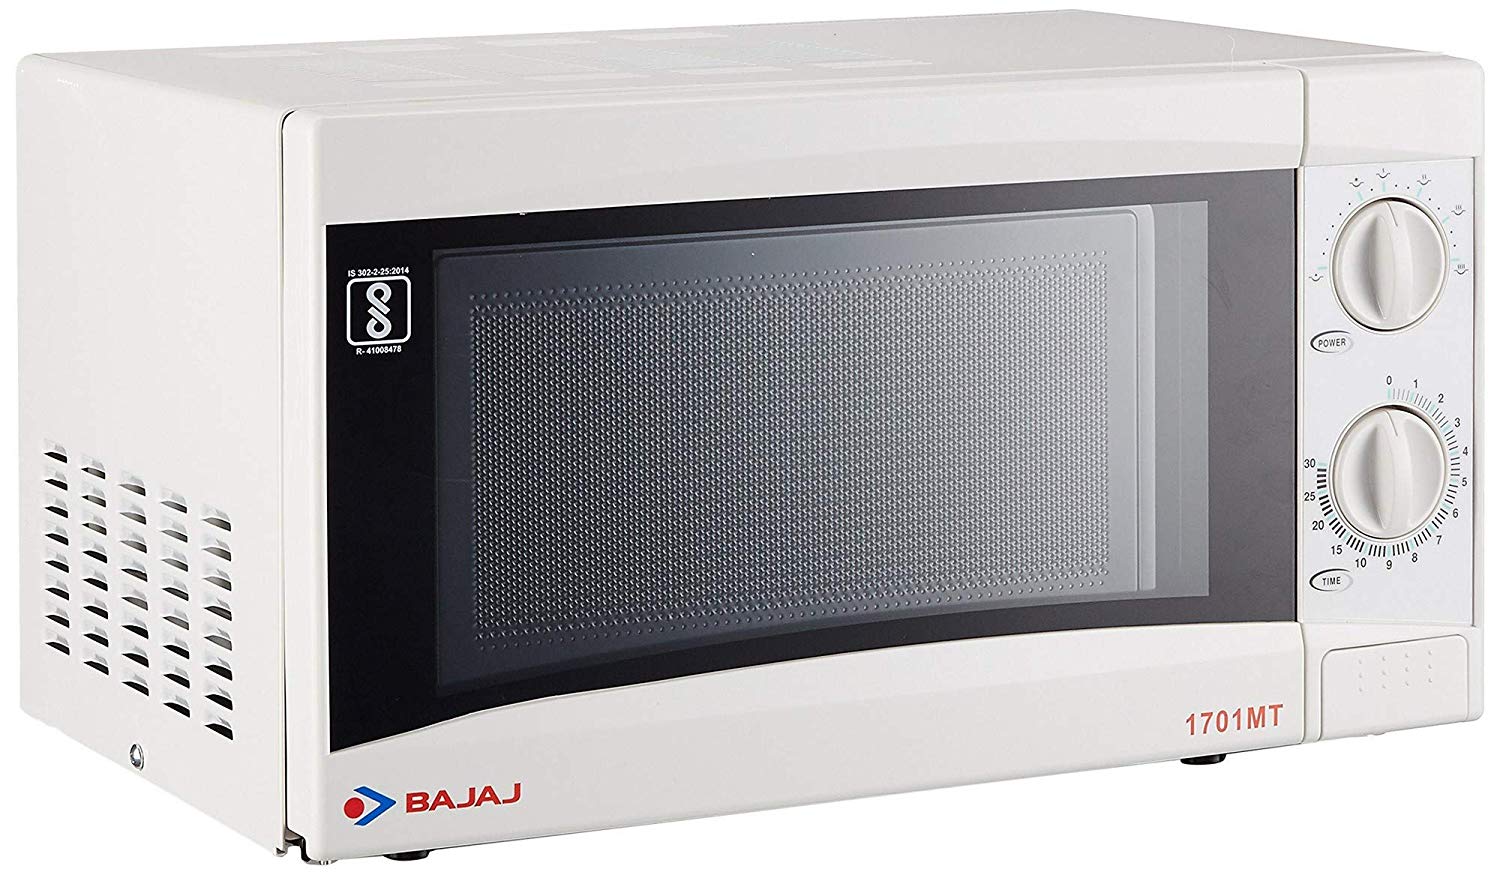 Bajaj 1701 mt dlx microwave oven user manually